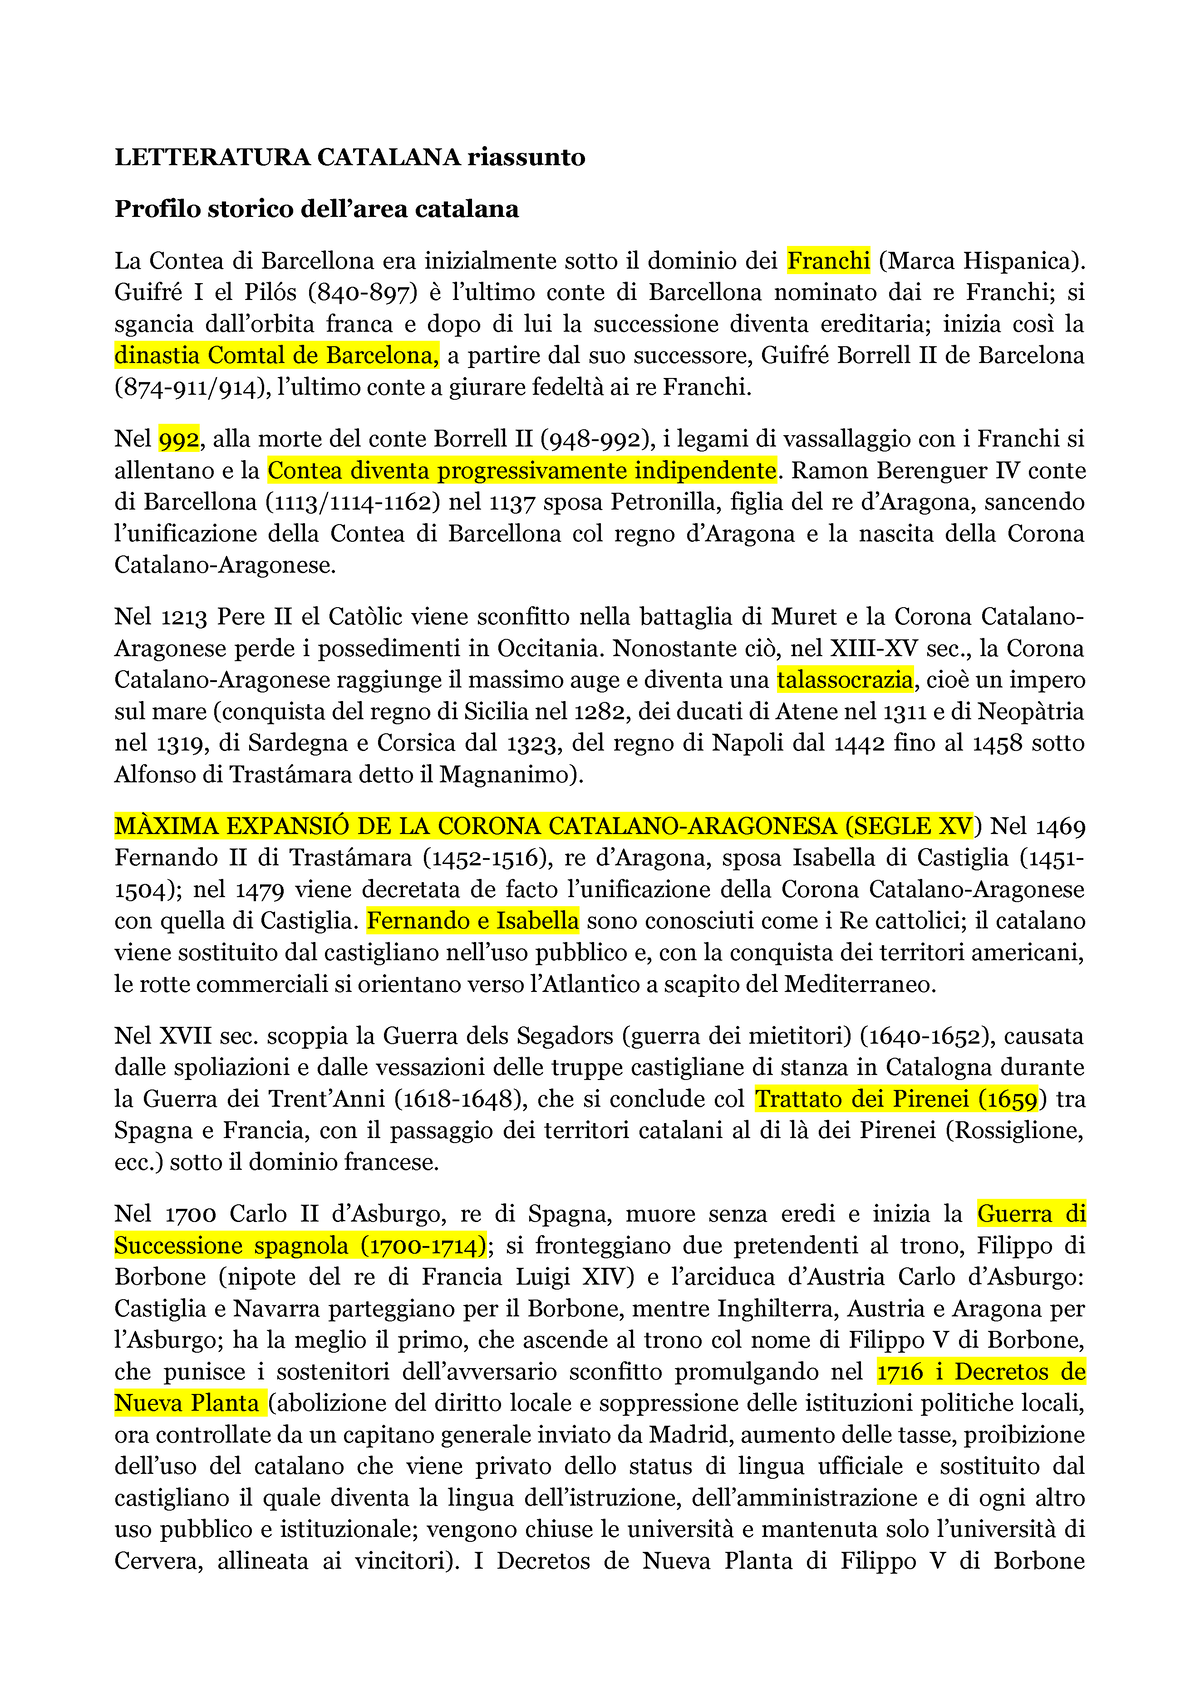 Appunti Lingua Catalana, Appunti di Catalano